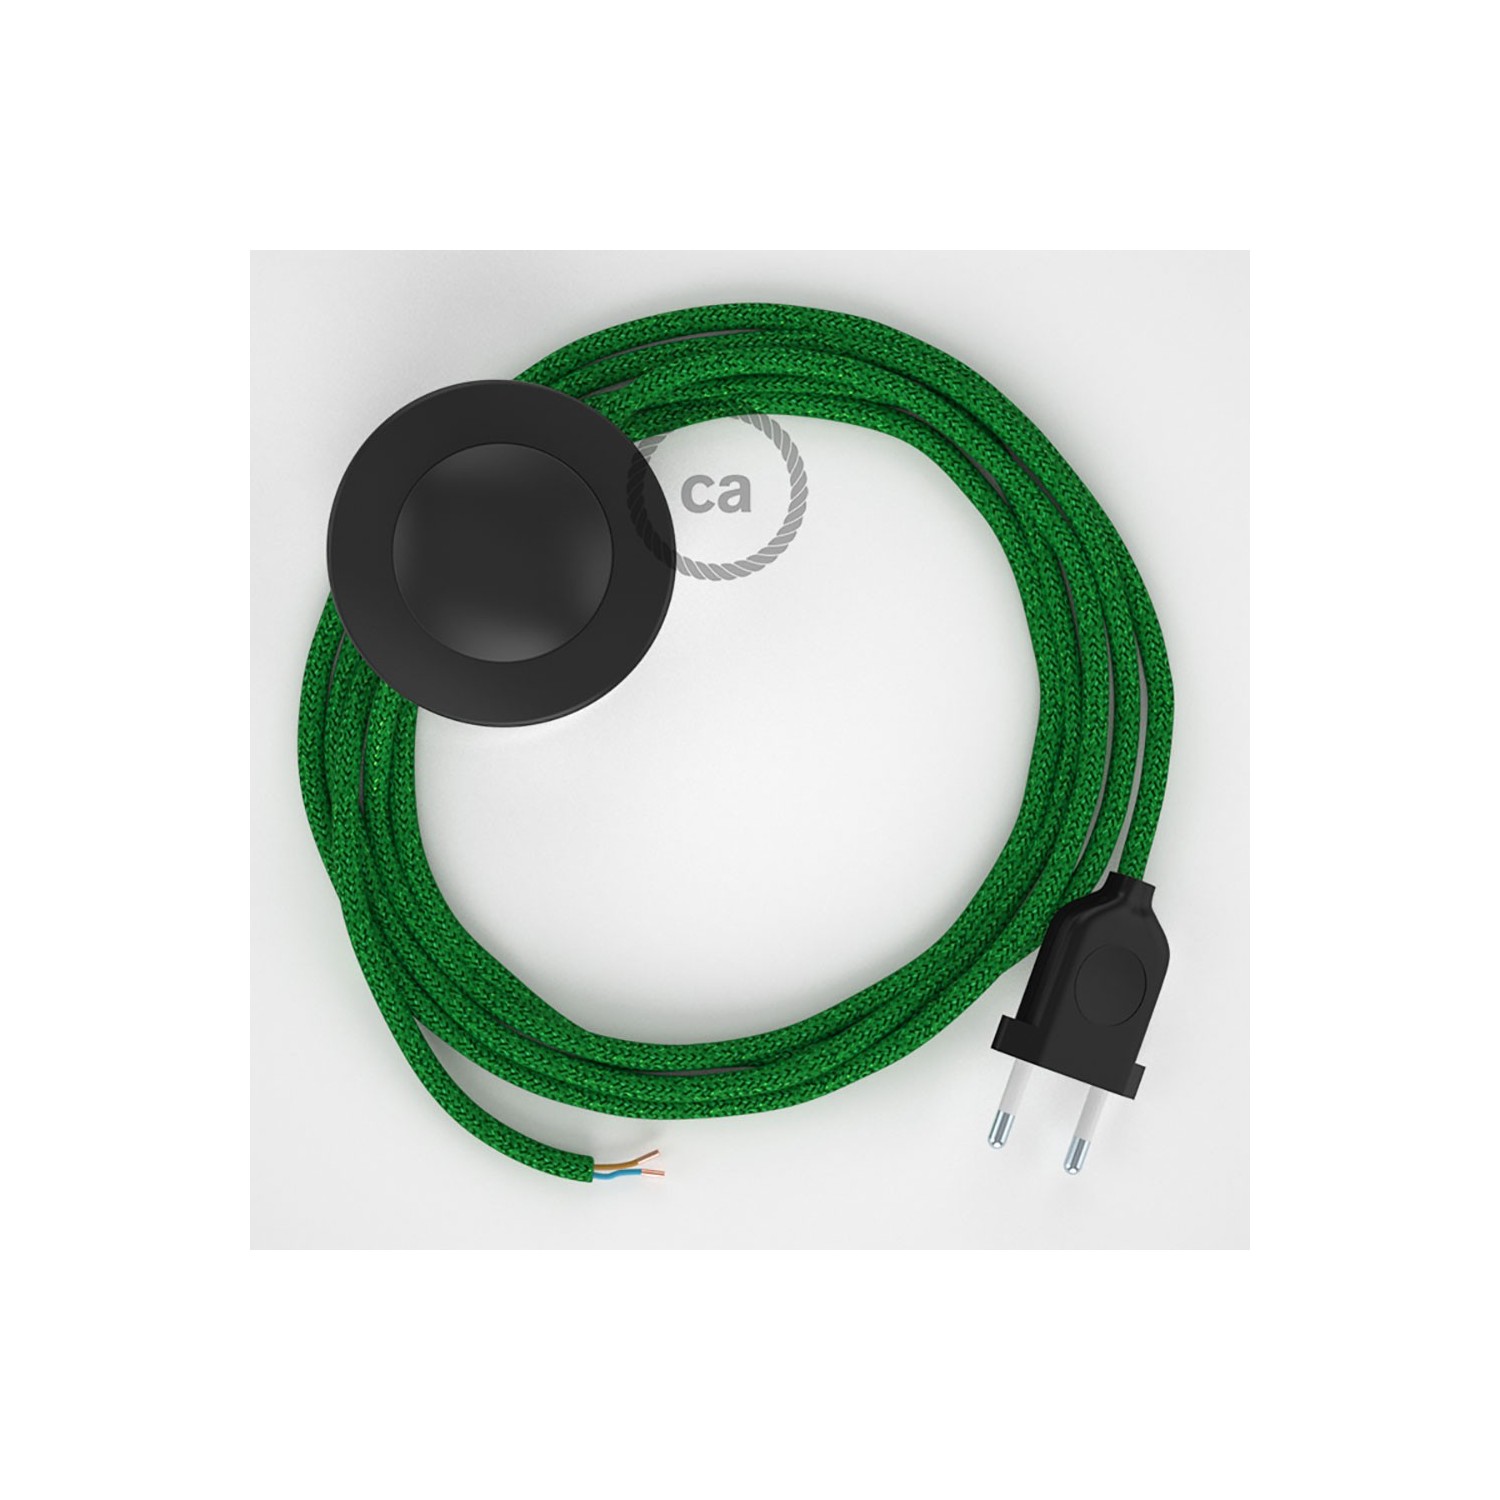 Stehleuchte Anschlussleitung RL06 Grün Geglittert Seideneffekt 3 m. Wählen Sie aus drei Farben bei Schalter und Stecke.